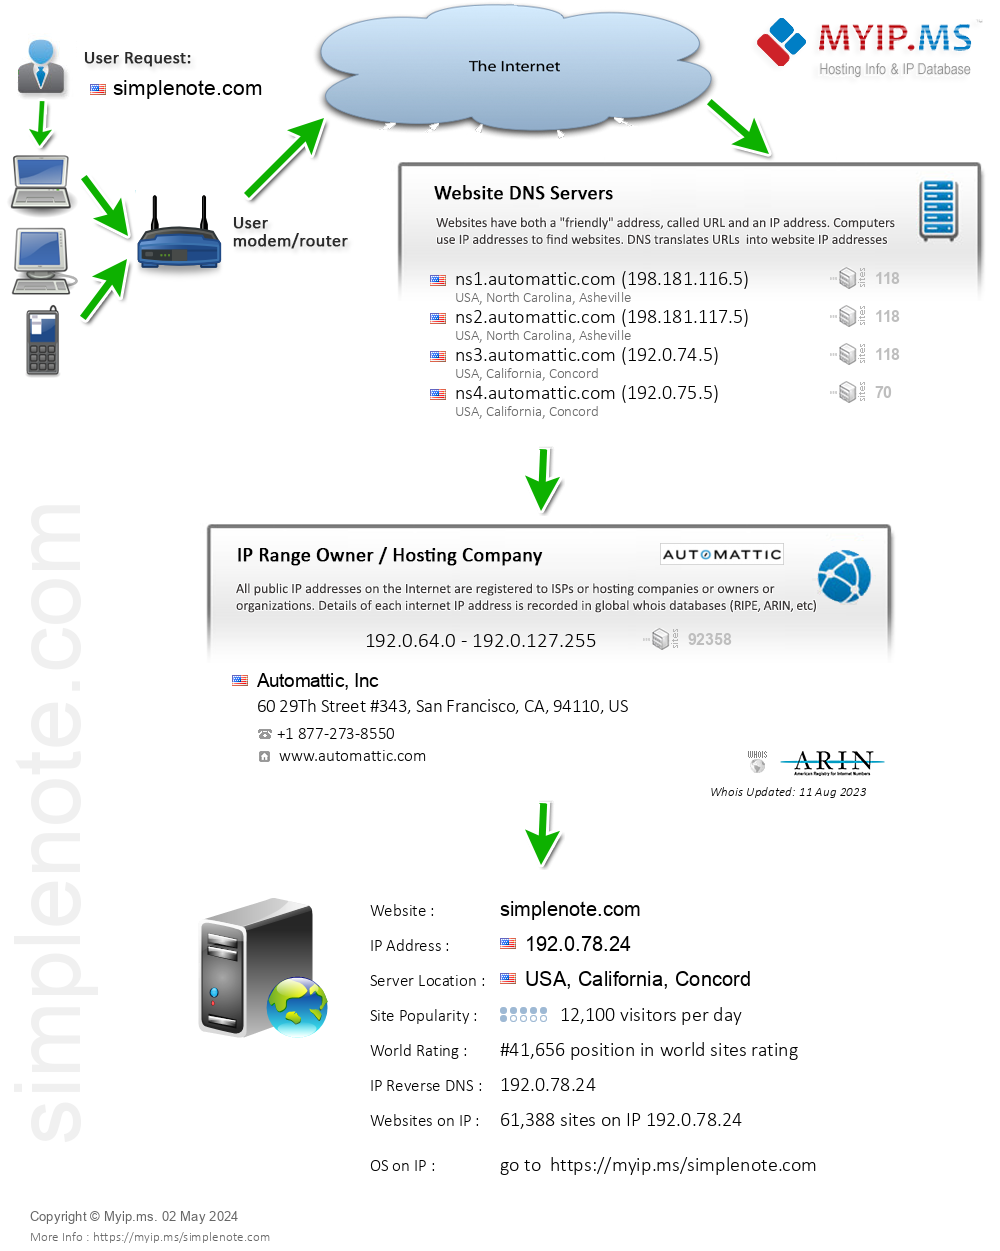 Simplenote.com - Website Hosting Visual IP Diagram